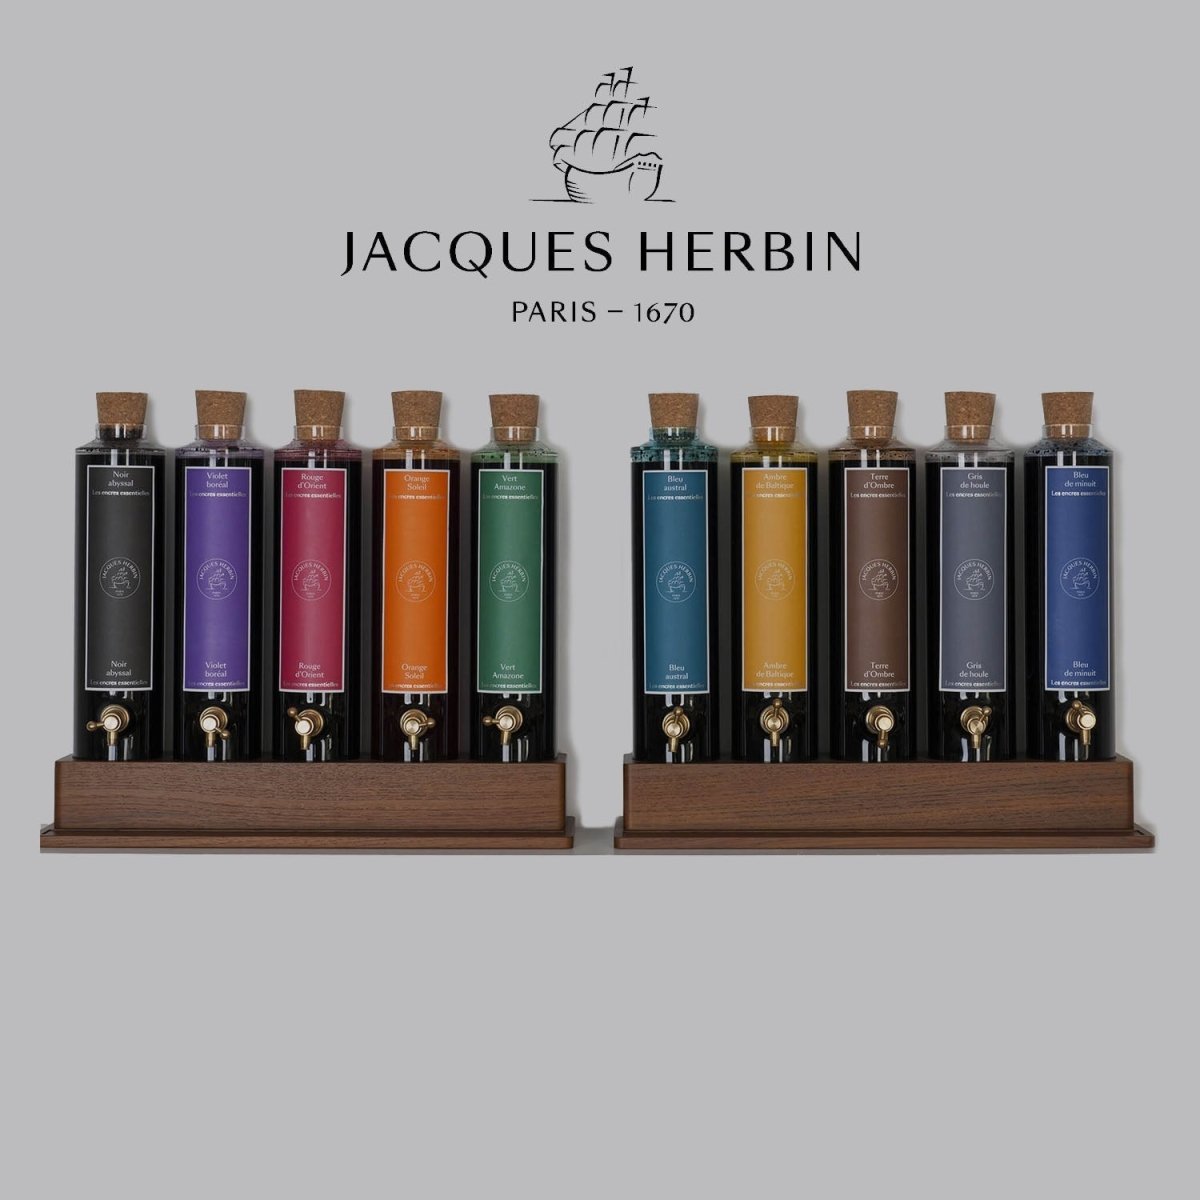 Jacques Herbin Essentielles Ink Bottle (Gris de Houle - 100 ML) 17108JT - SCOOBOO - JHB_INKBTL_GRSHOU_100ML_17108JT - Ink Bottle